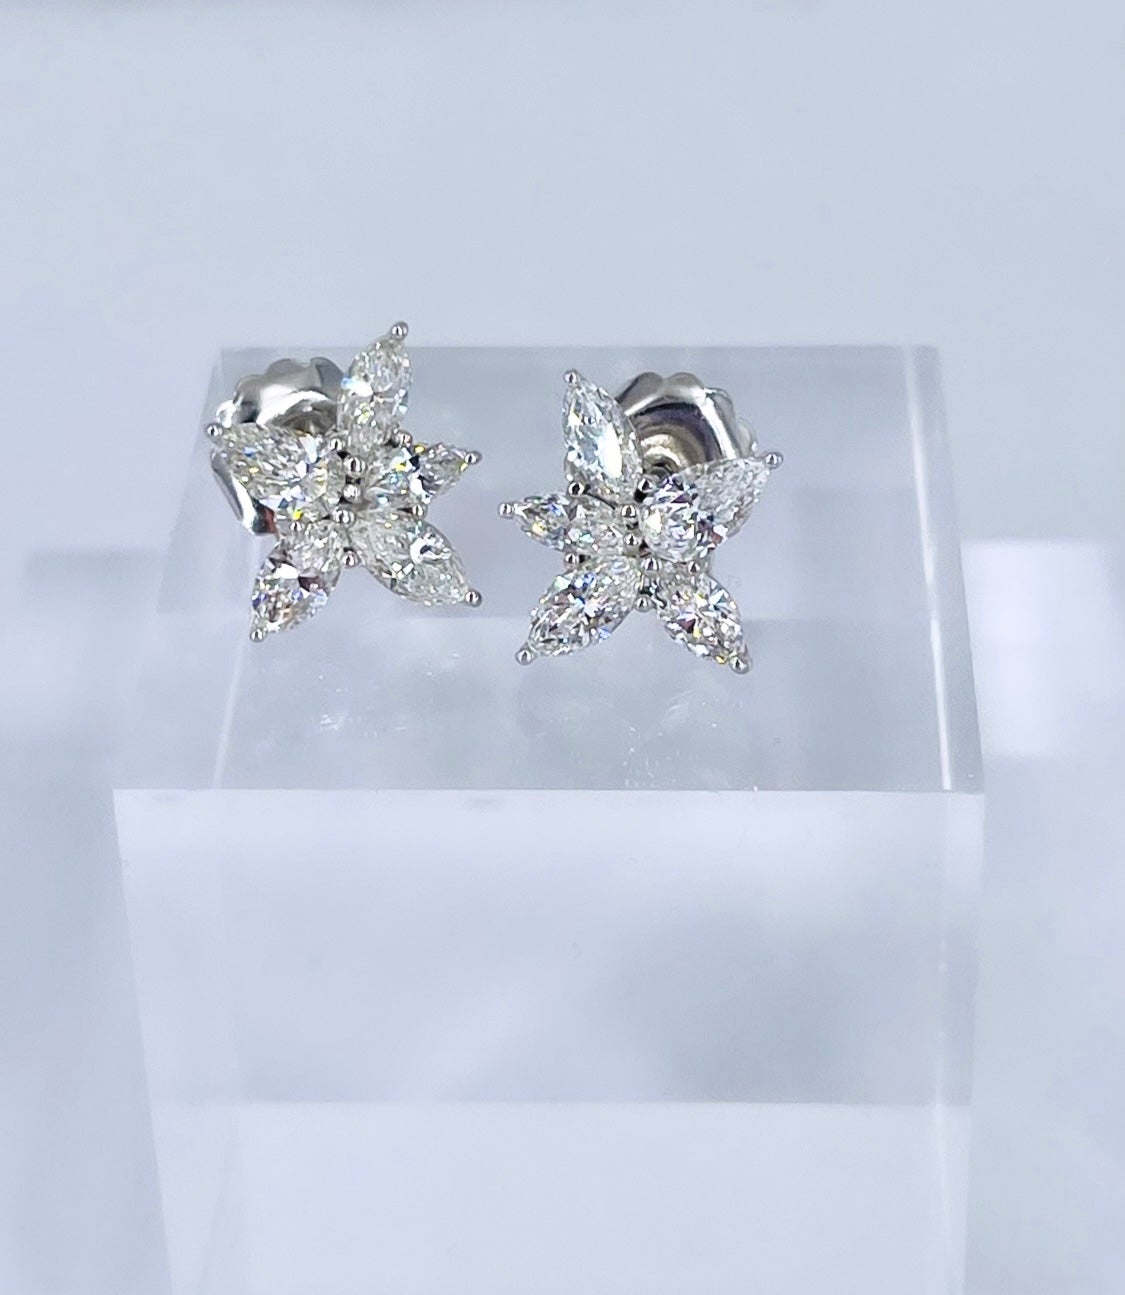 Diese glamourösen Ohrringe von J. Birnbach sind ein zeitloser Stil, der jedem Ensemble Eleganz und Glanz verleiht. Perfekt für einen Abend mit schwarzer Krawatte oder für eine Braut: birnenförmige und marquise Diamanten bilden ein lebendiges